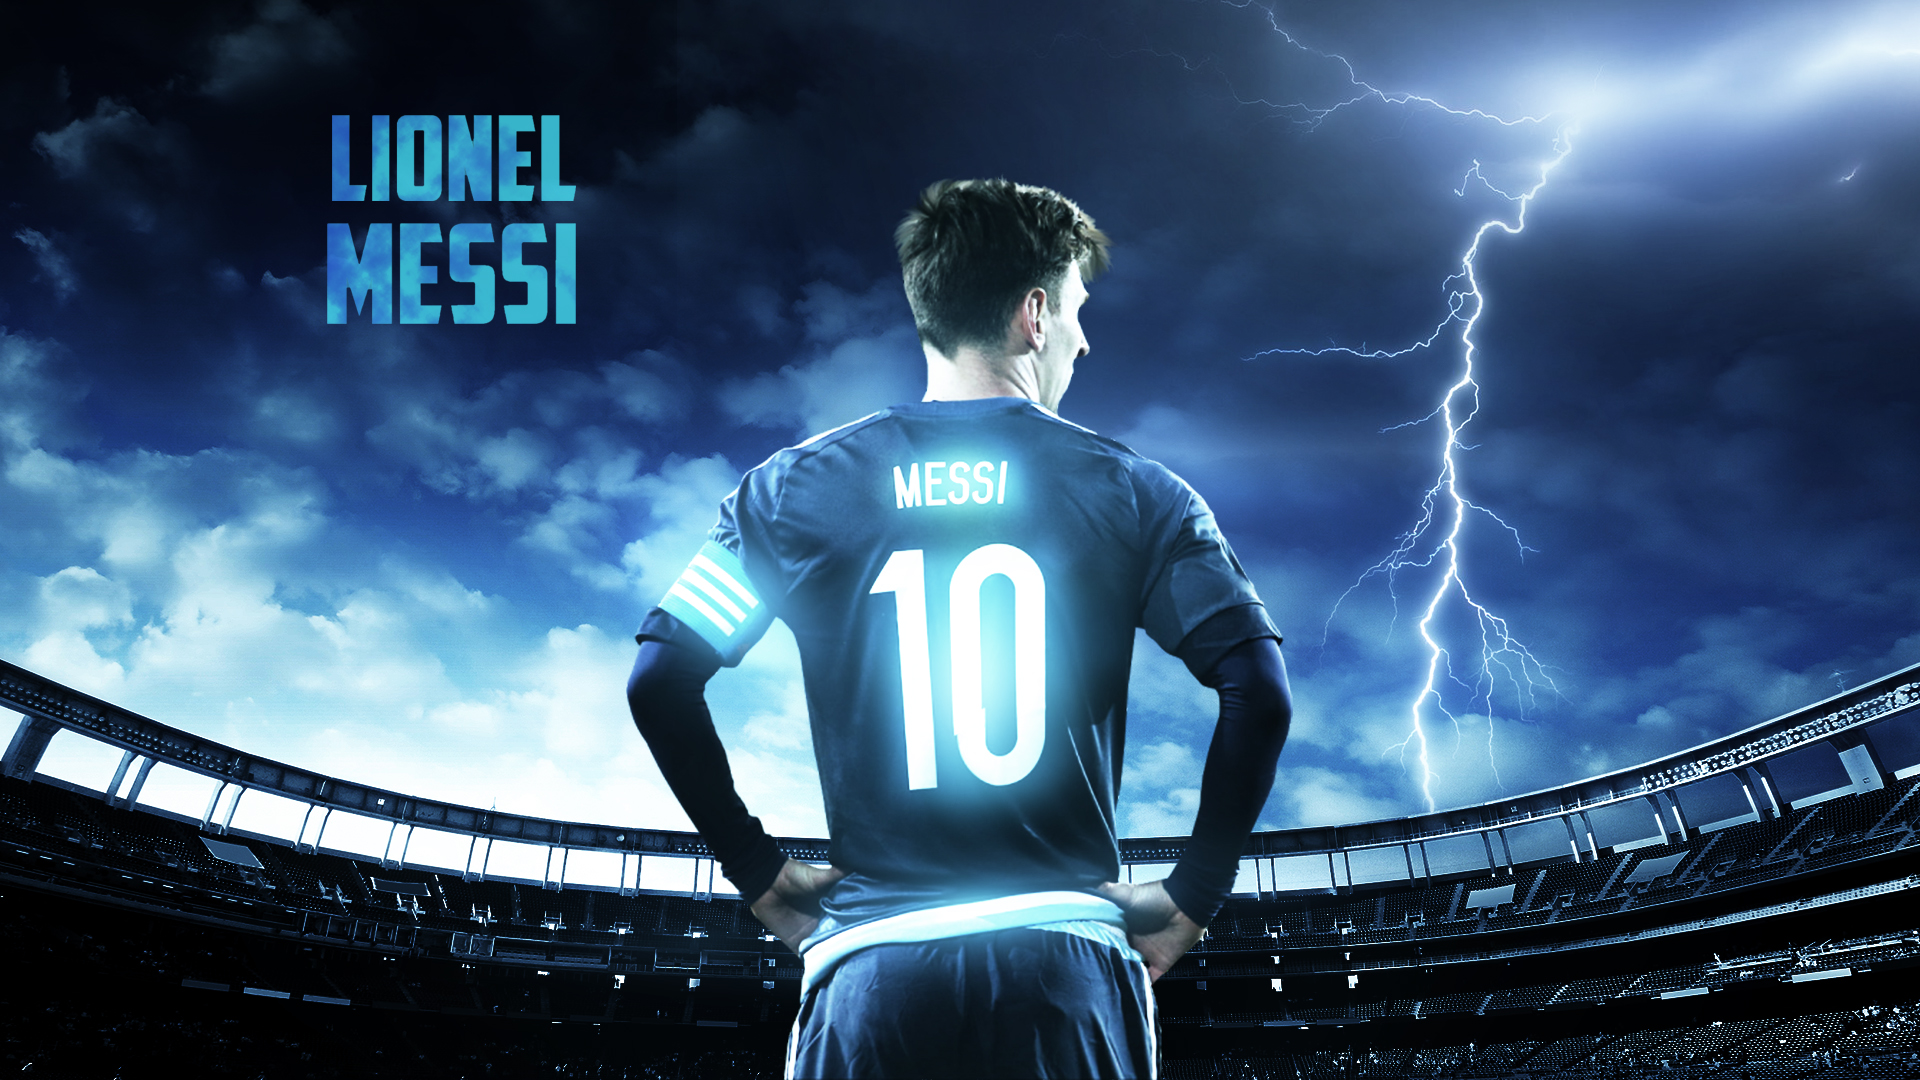 Lionel Messi Captain Argentina National Team Football Fondos de pantalla Hd  Lionel Messi Imágenes por Ana  Imágenes españoles imágenes